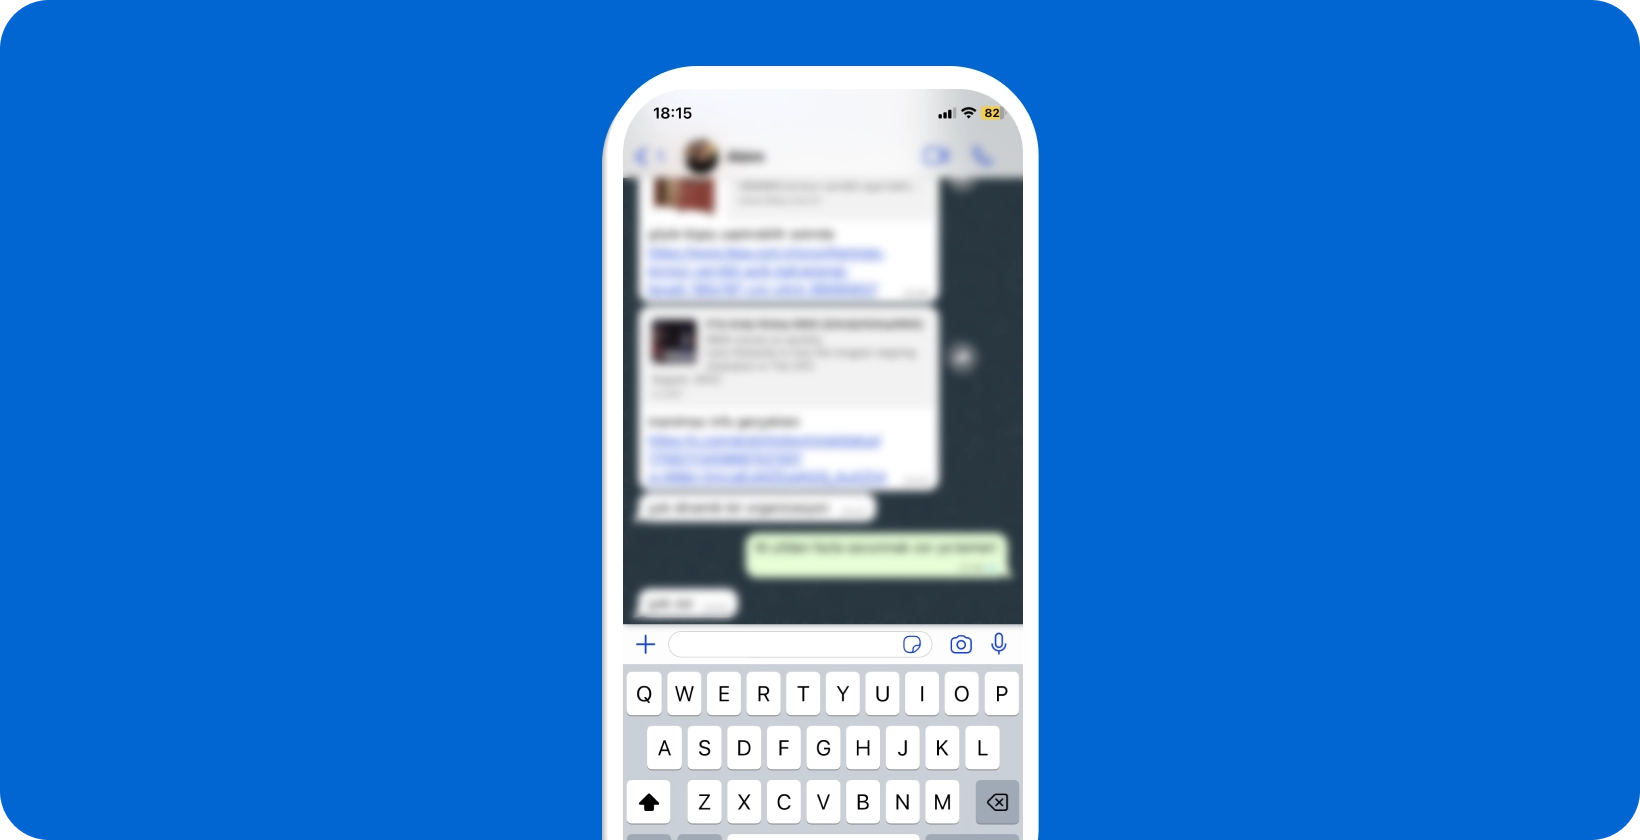 هاتف ذكي يعرض محادثة WhatsApp نشطة مع فتح لوحة المفاتيح ، وجاهز للإملاء الصوتي.